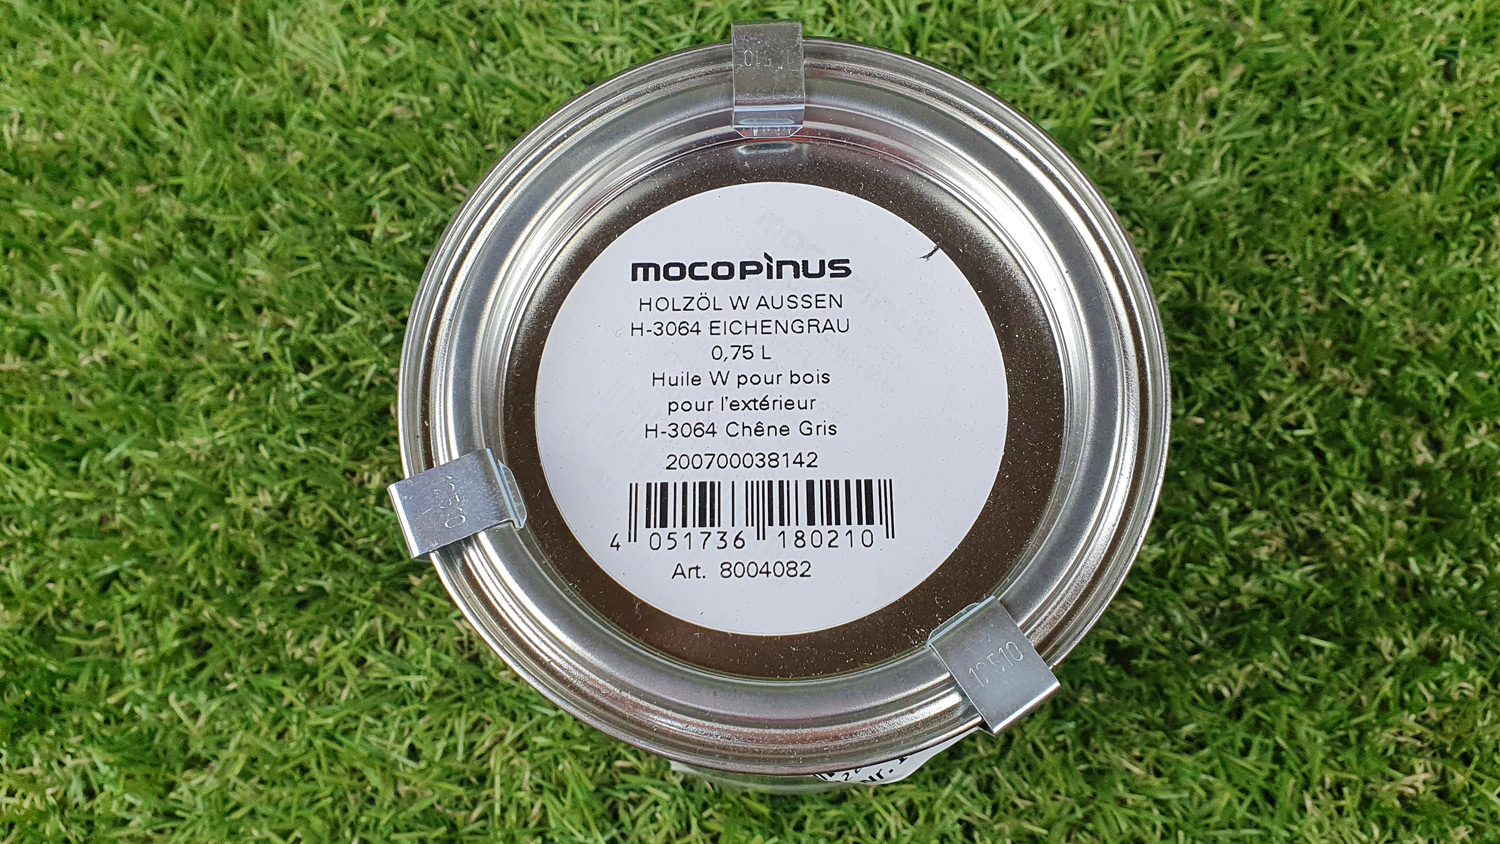 SALE - Mocopinus Holzöl Eichengrau W 3064 0,75l (für alle Laub- und Nadelhölzer)